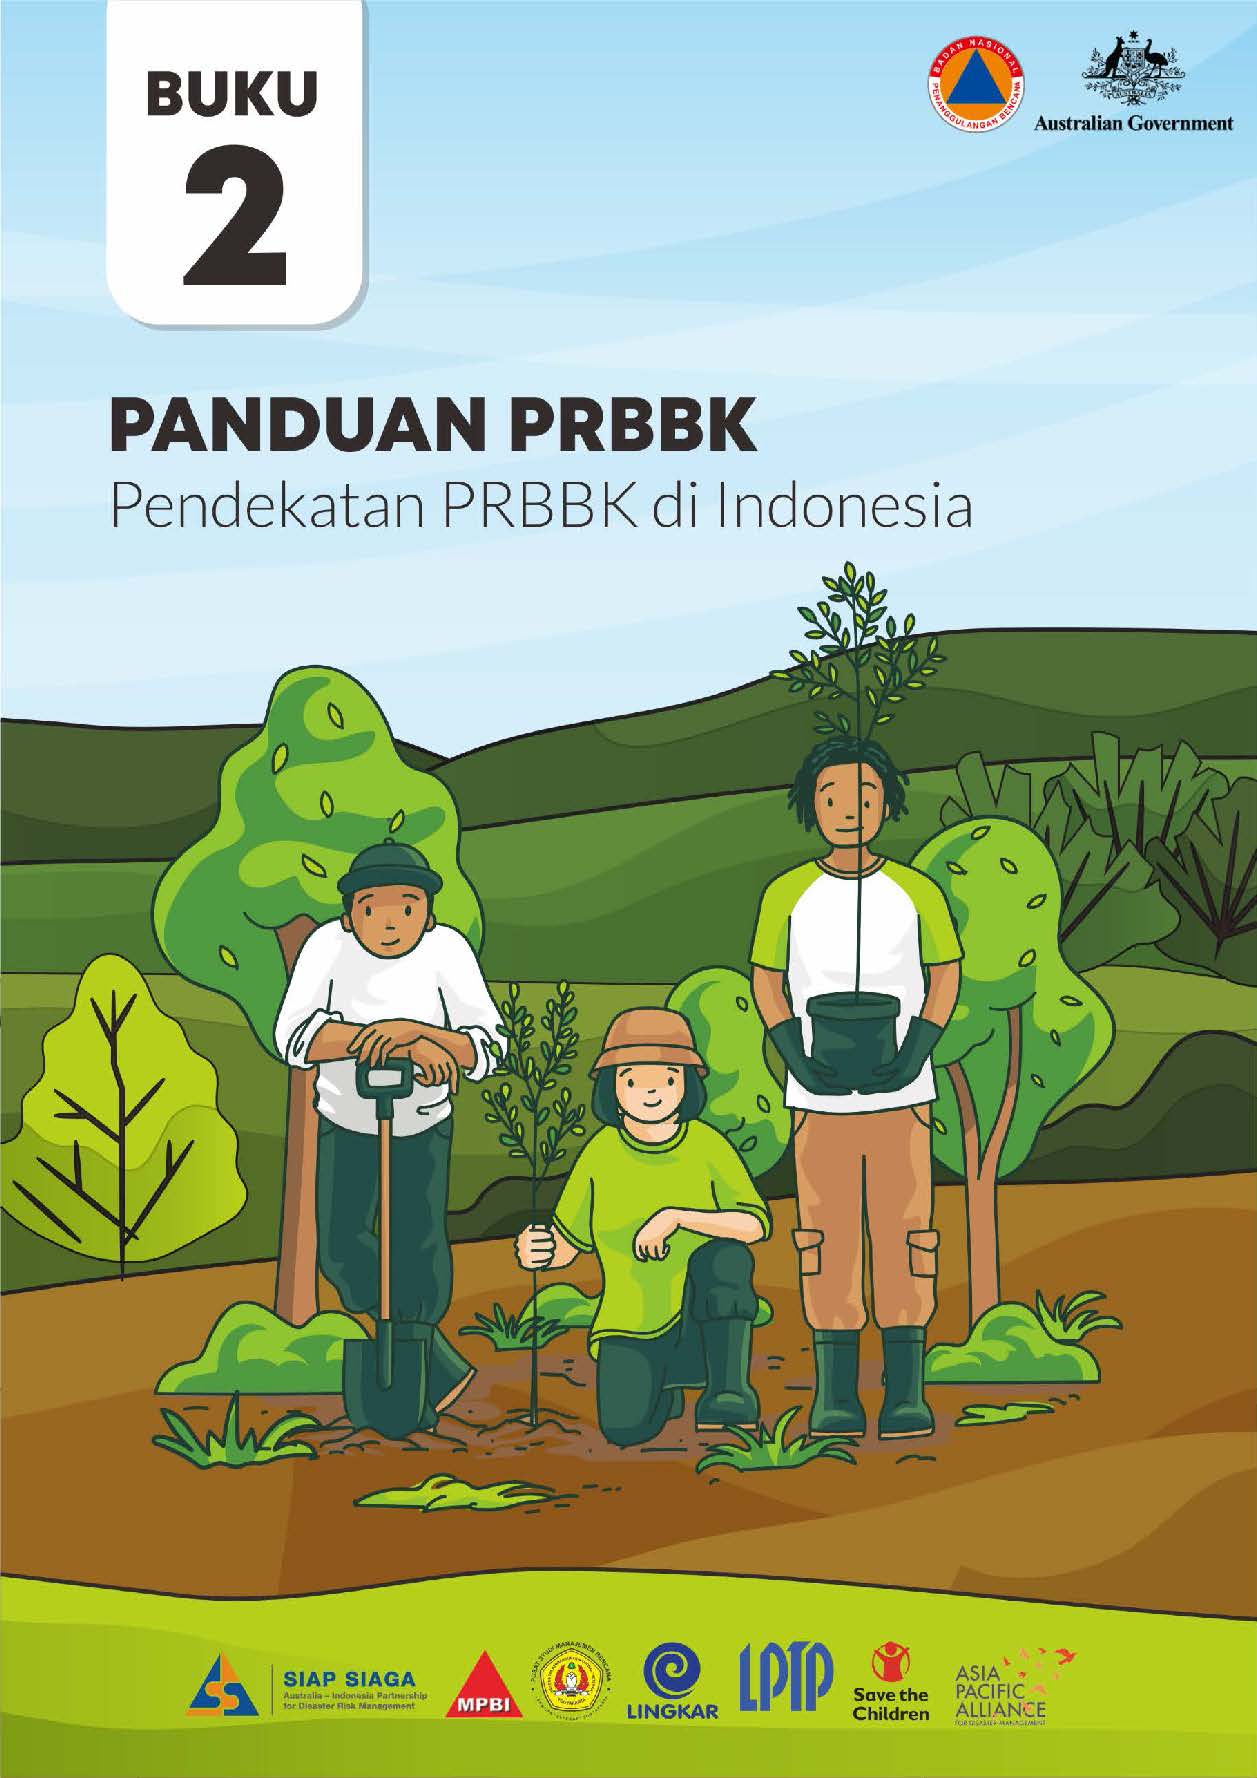 Buku 2 – PANDUAN PRBBK – Pendekatan PRBBK di Indonesia